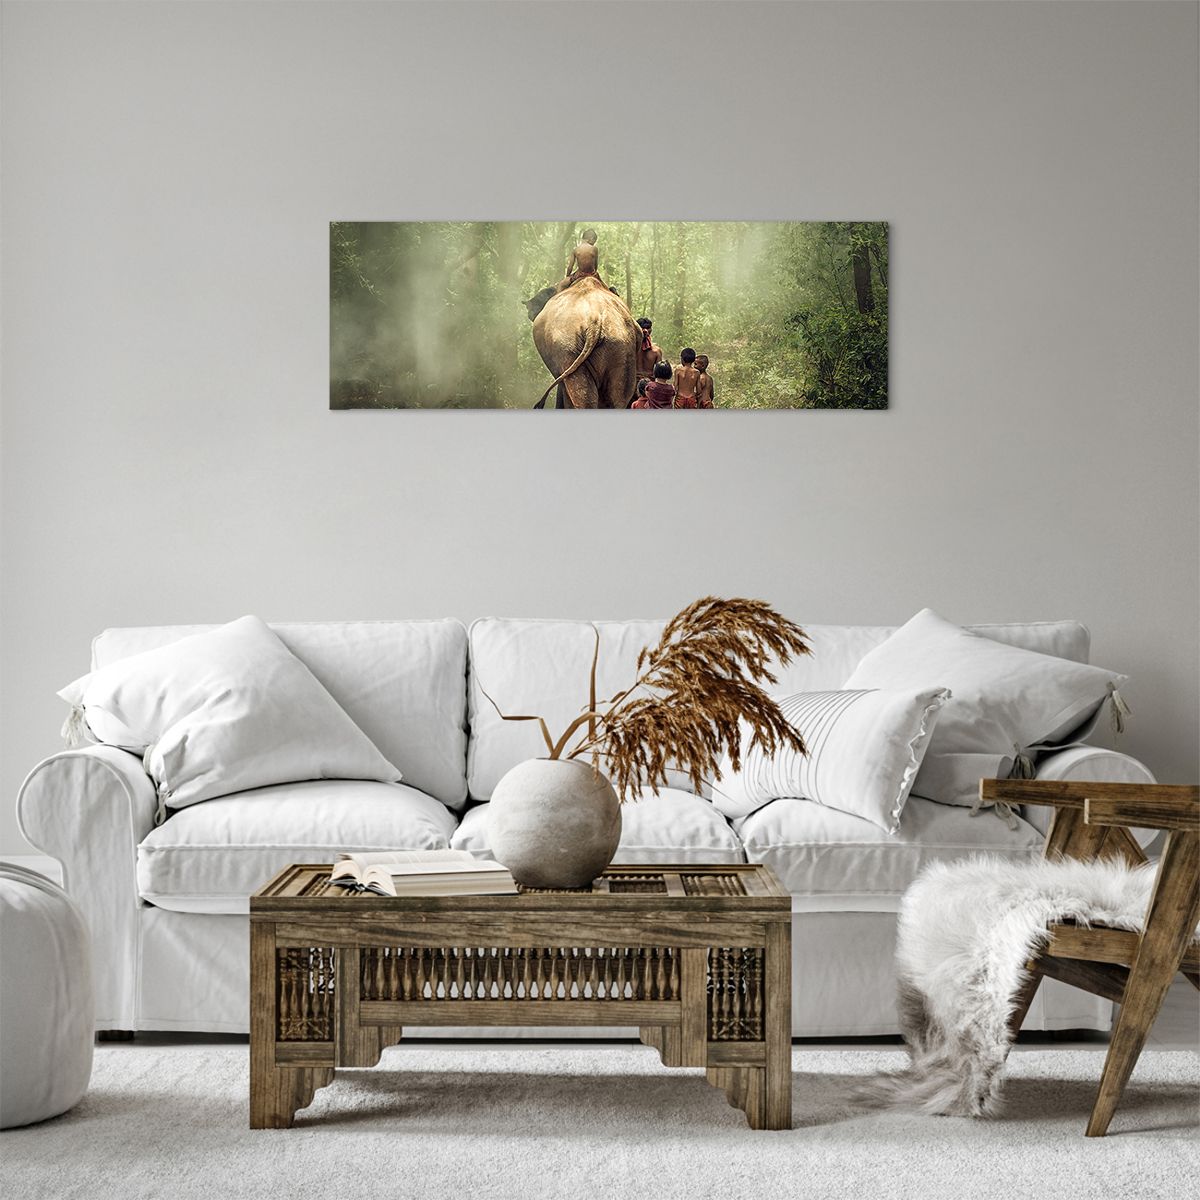 Bild auf Leinwand Landschaft, Bild auf Leinwand Elefant, Bild auf Leinwand Urwald, Bild auf Leinwand Asien, Bild auf Leinwand Thailand